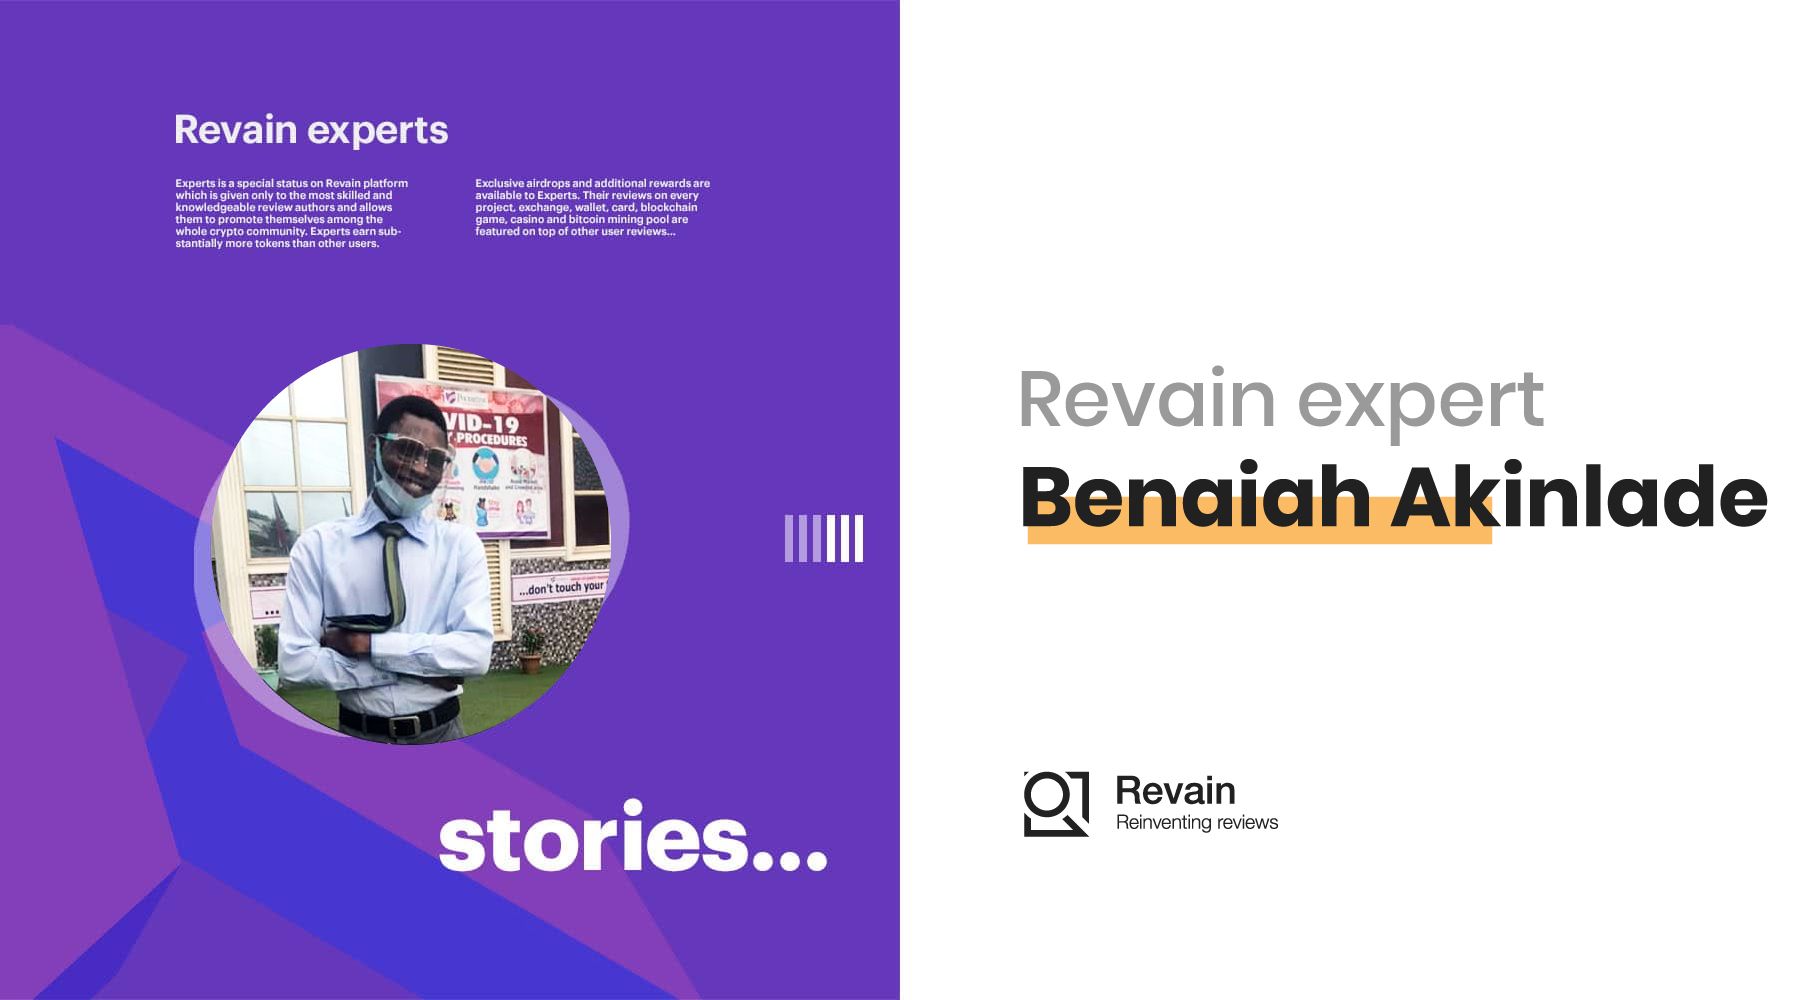 Article Benaiah Akinlade's Story